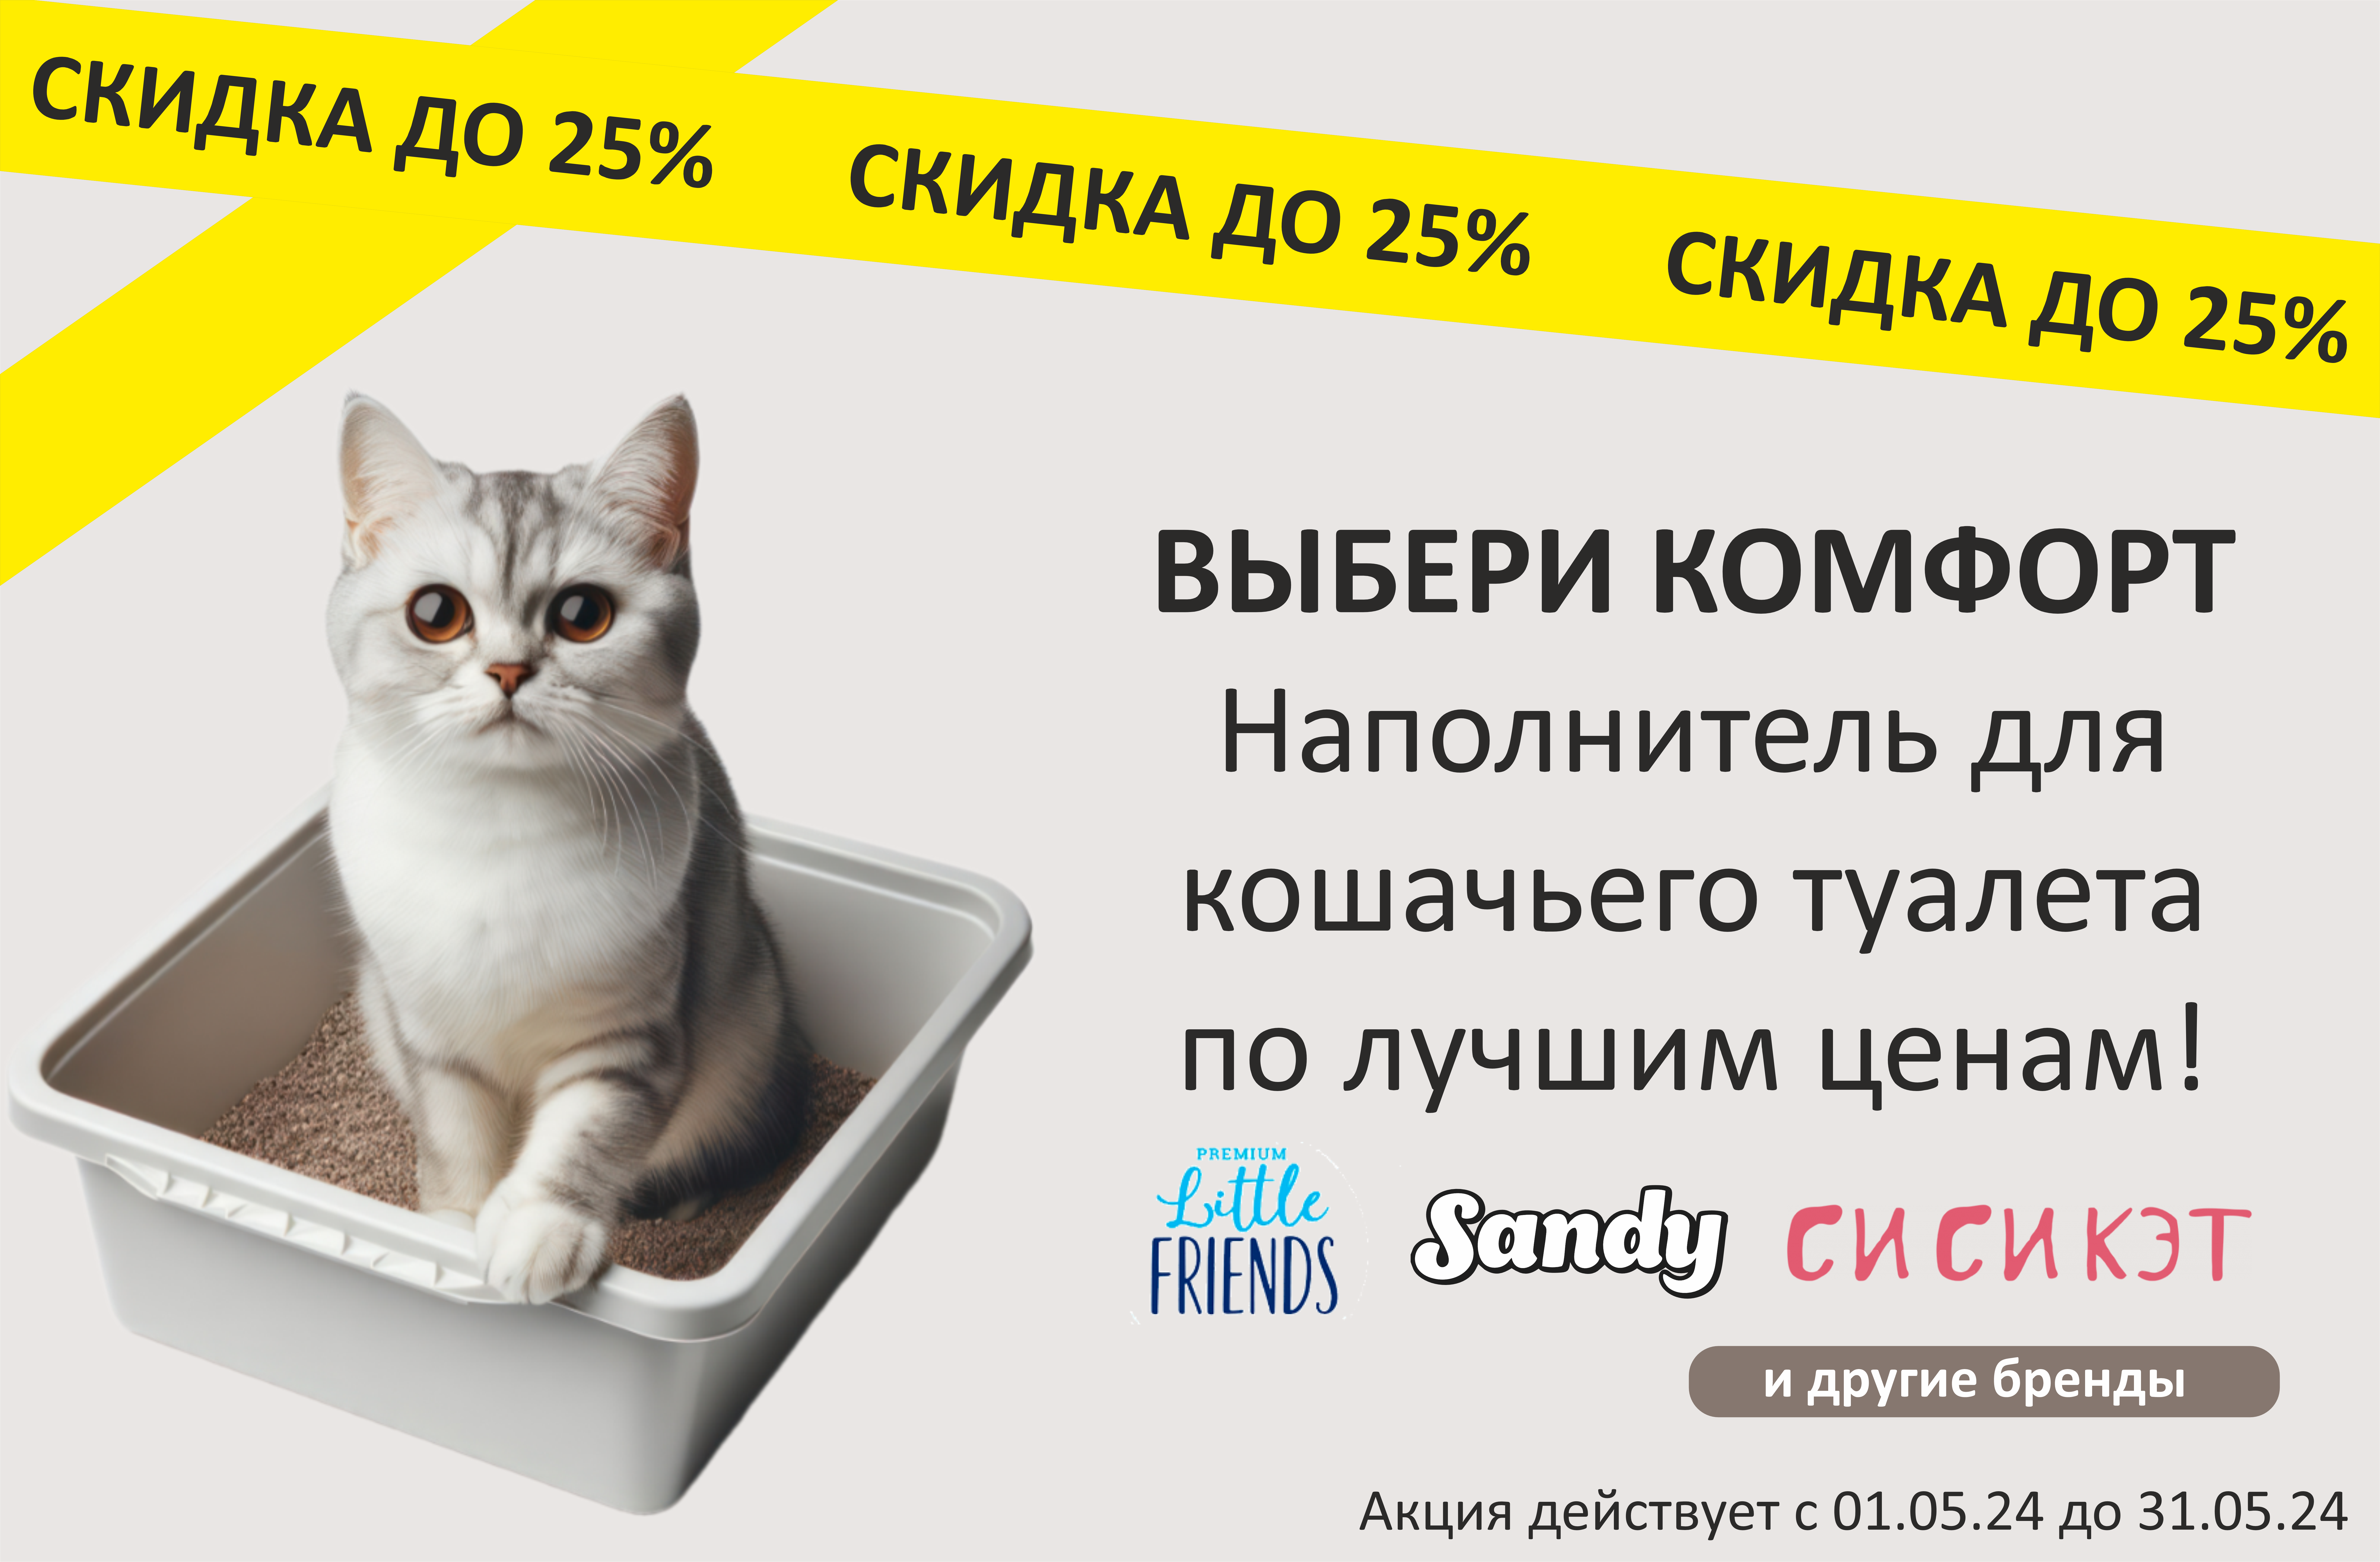 Наполнители для кошачьего туалета со скидкой до 25%